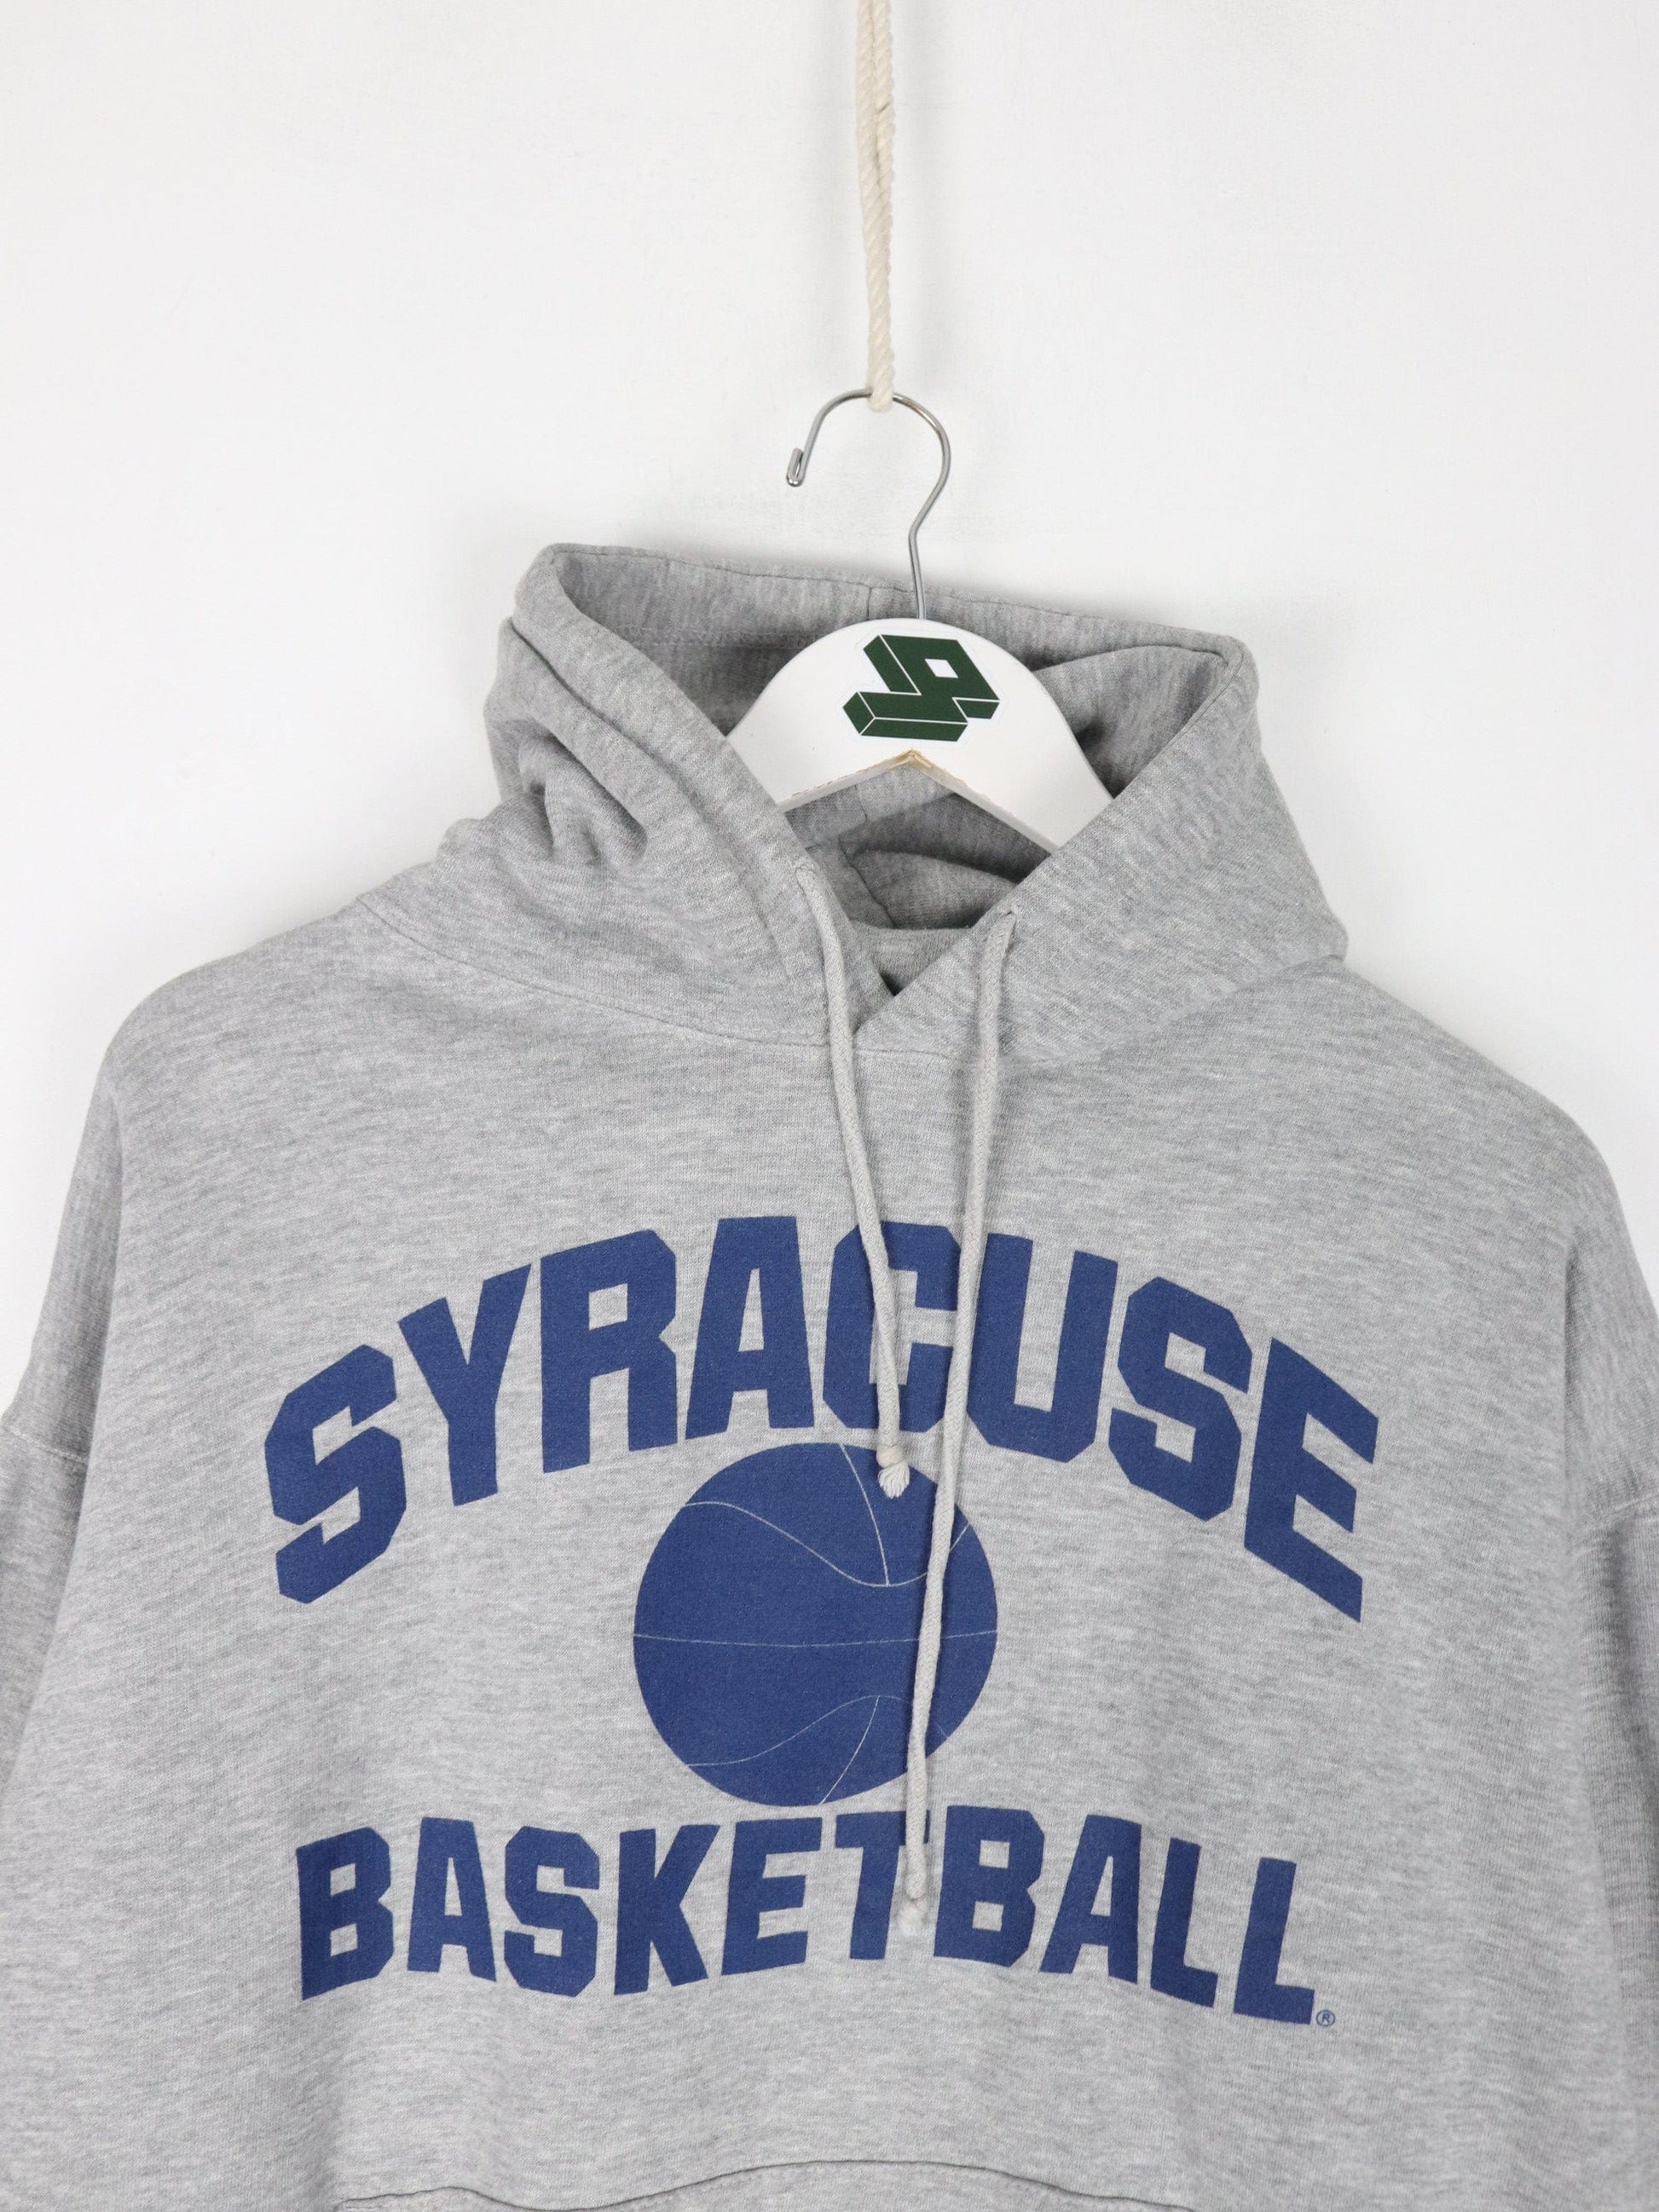 Collegiate Sweatshirts & Hoodies Syracuse Orangemen Sweatshirt Fits Mens Small Grey Basketball Hoodie College